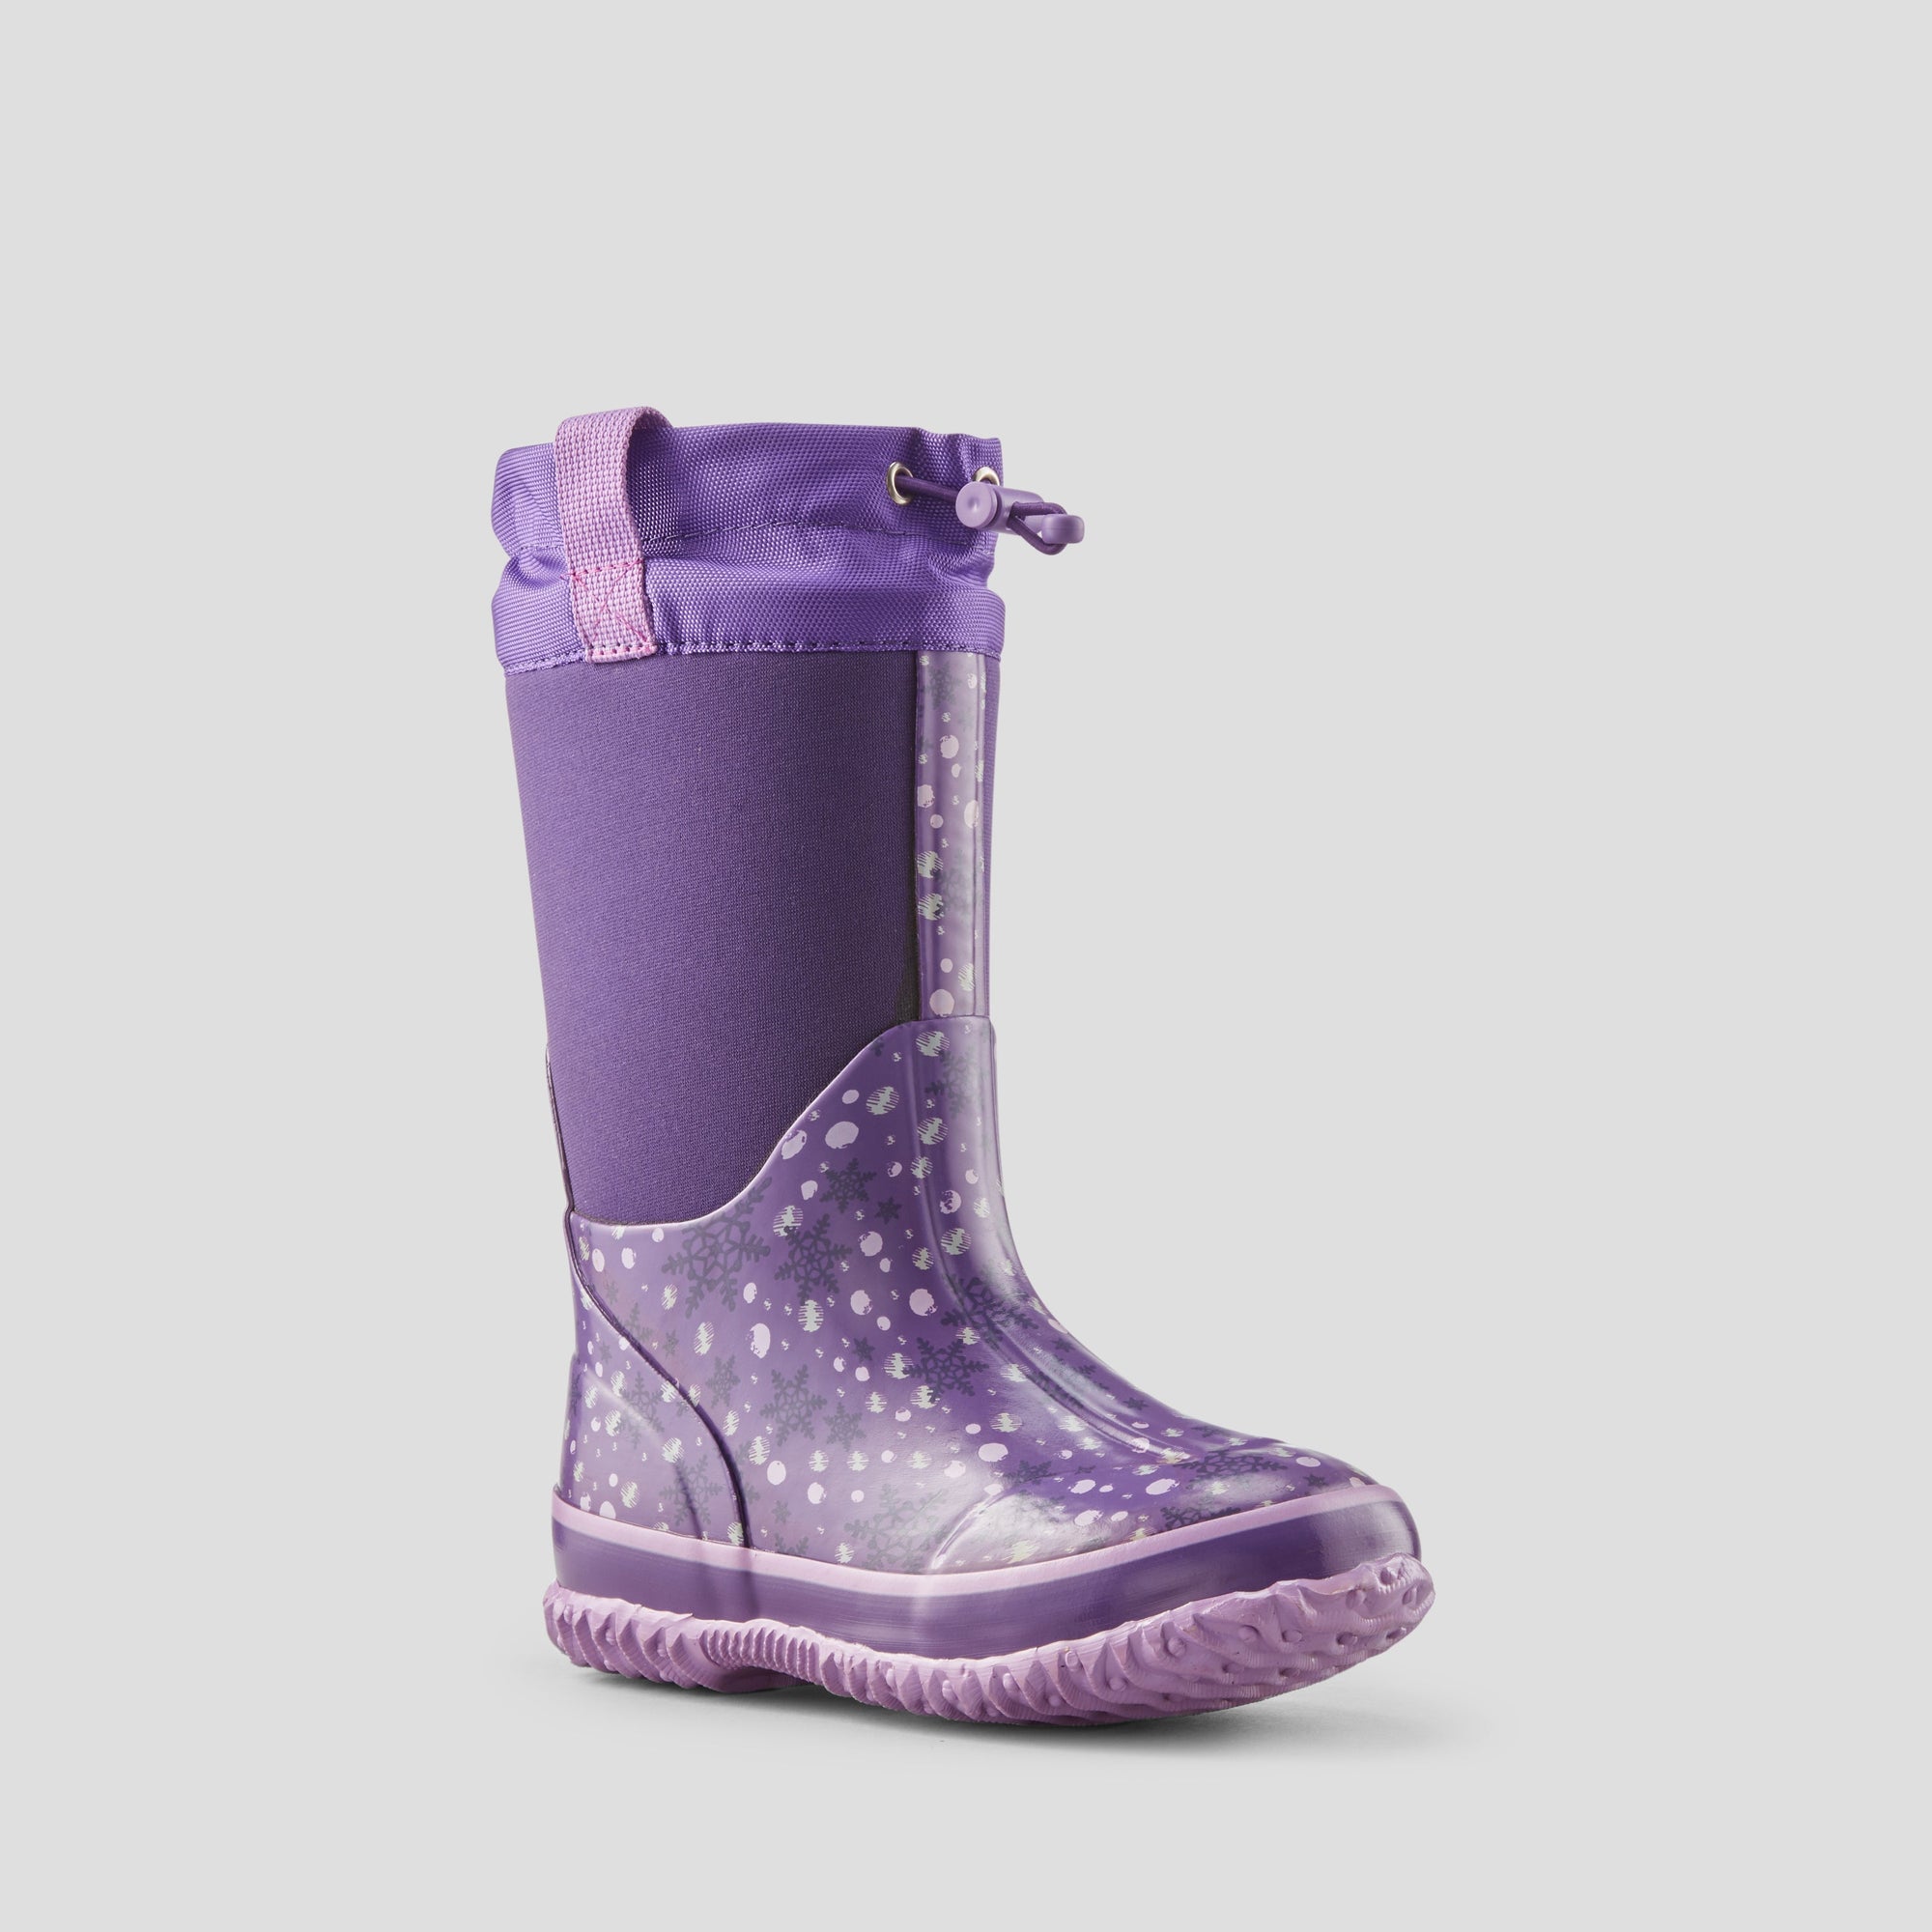 Snowglobe - Botte d'hiver imperméable en néoprène (Junior+) - Colour Purple